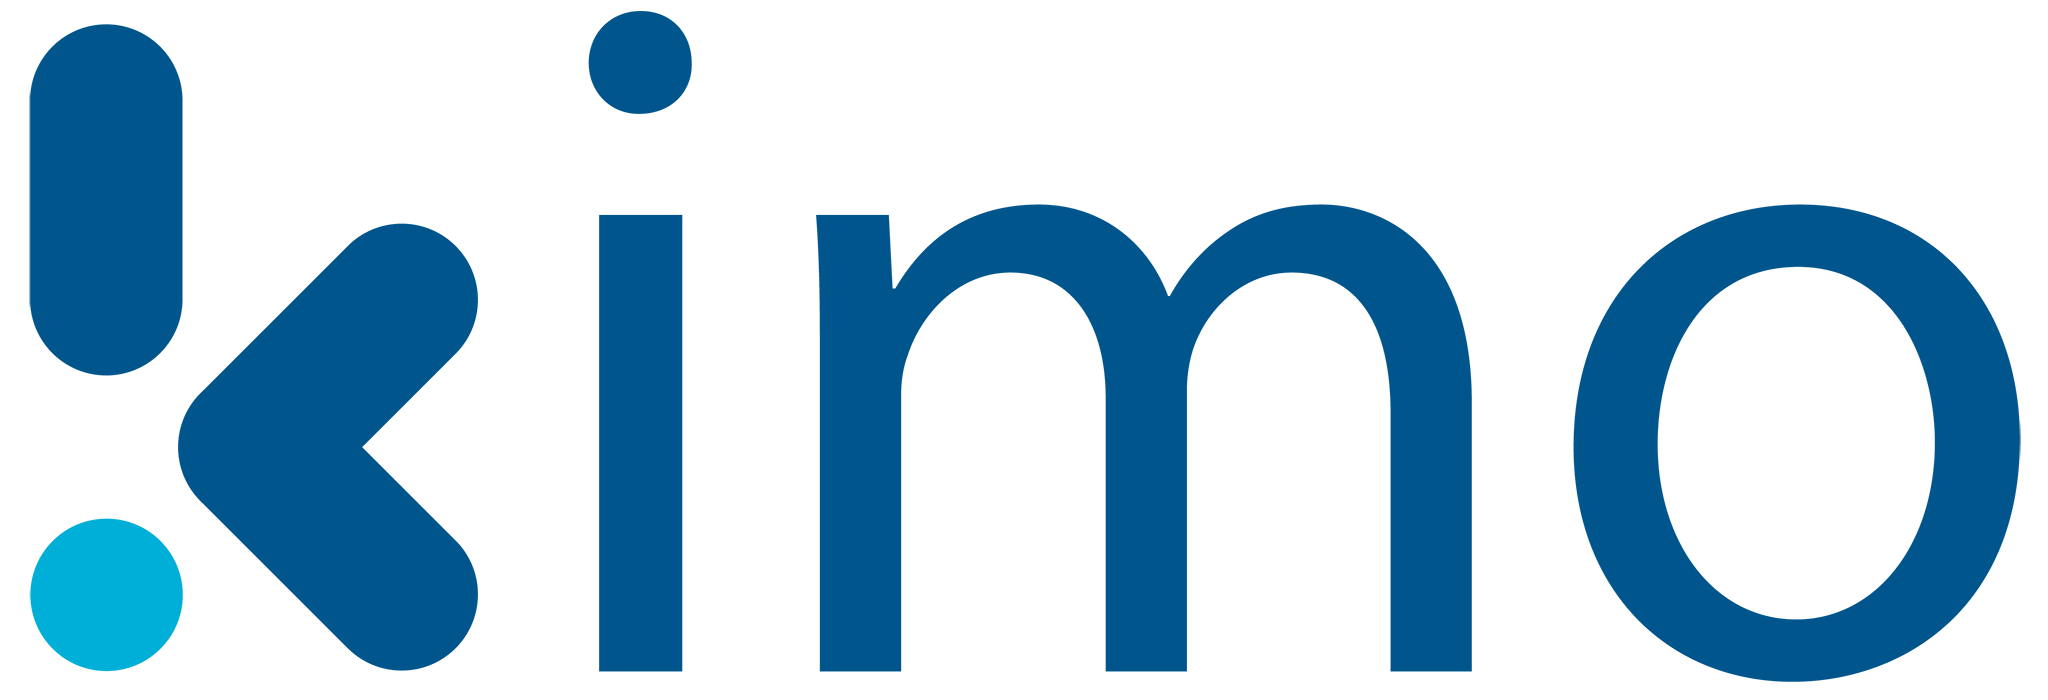 Kimo - logo scritta